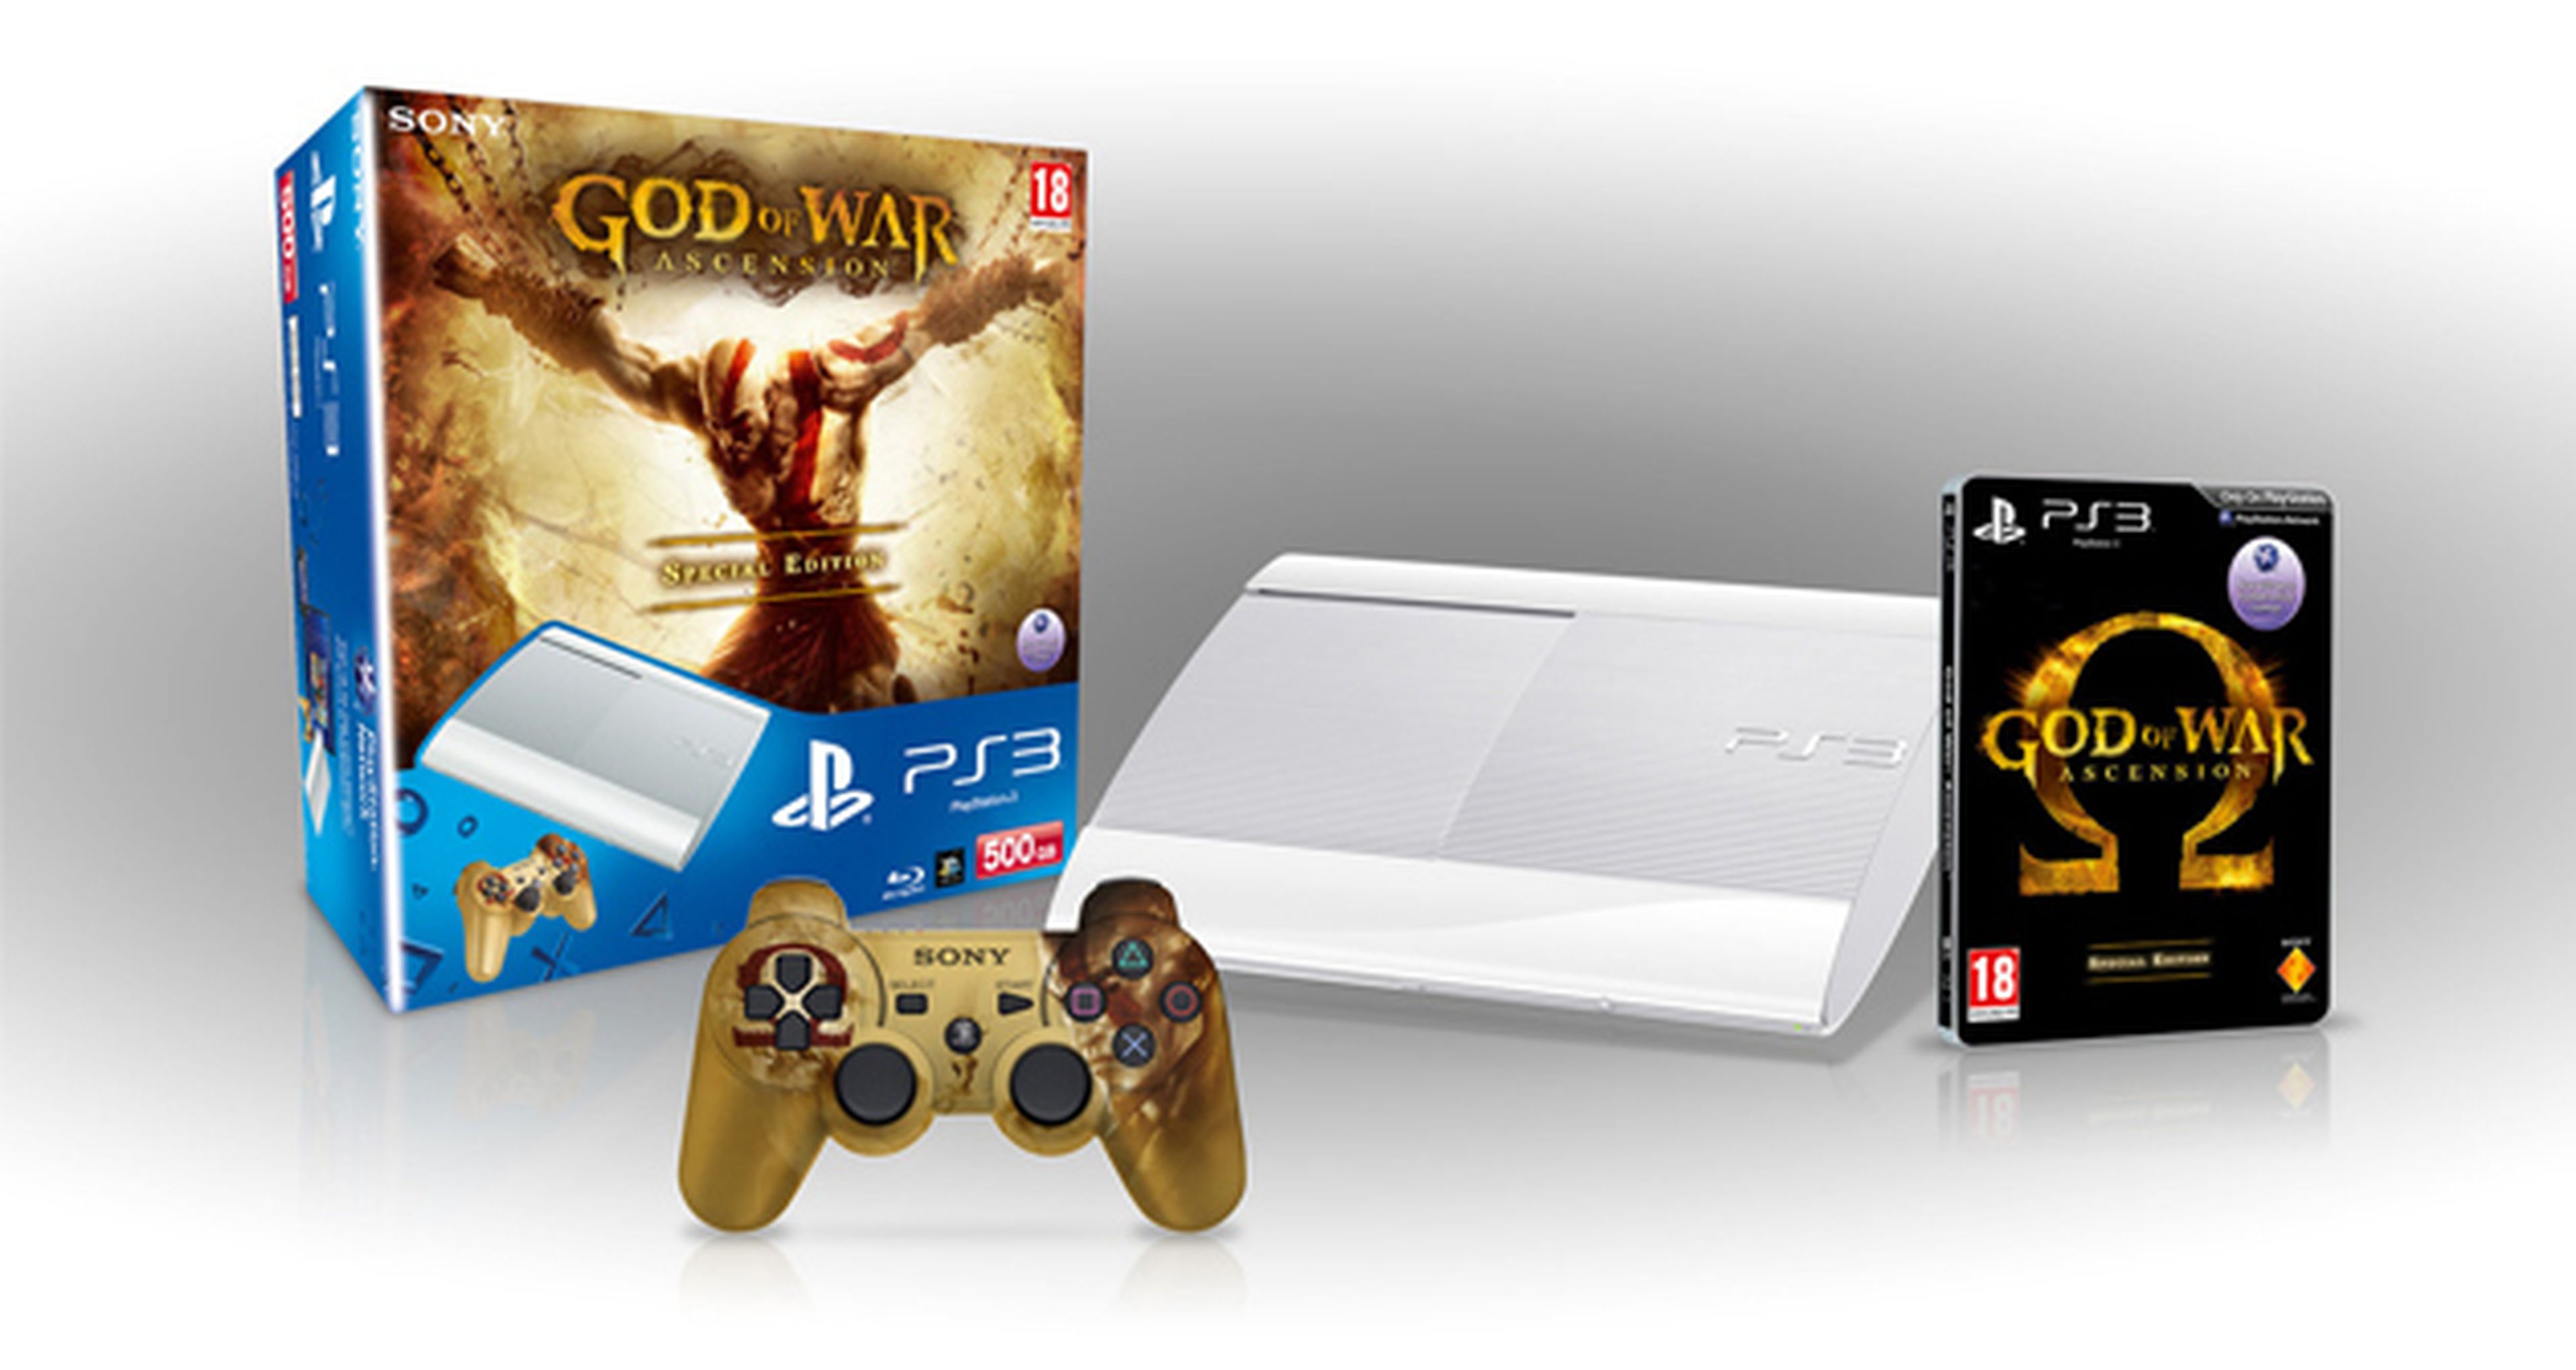 PlayStation 3 edición God of War Ascension